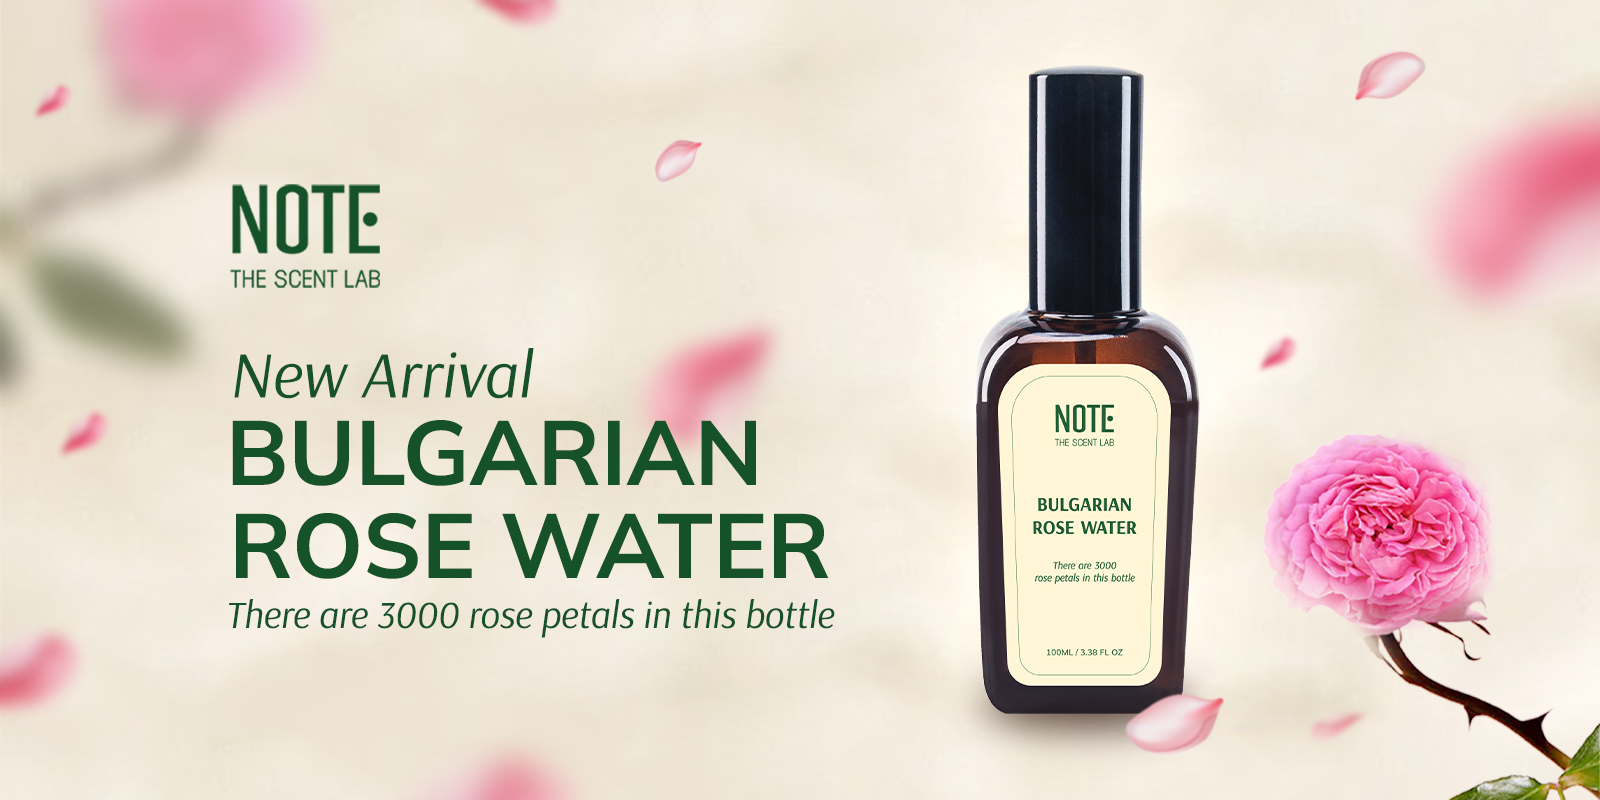 Khuyến mãi mua nước hoa tặng Bulgarian Rose Water 100ml - sản phẩm mùi hương từ NOTE - The Scent Lab